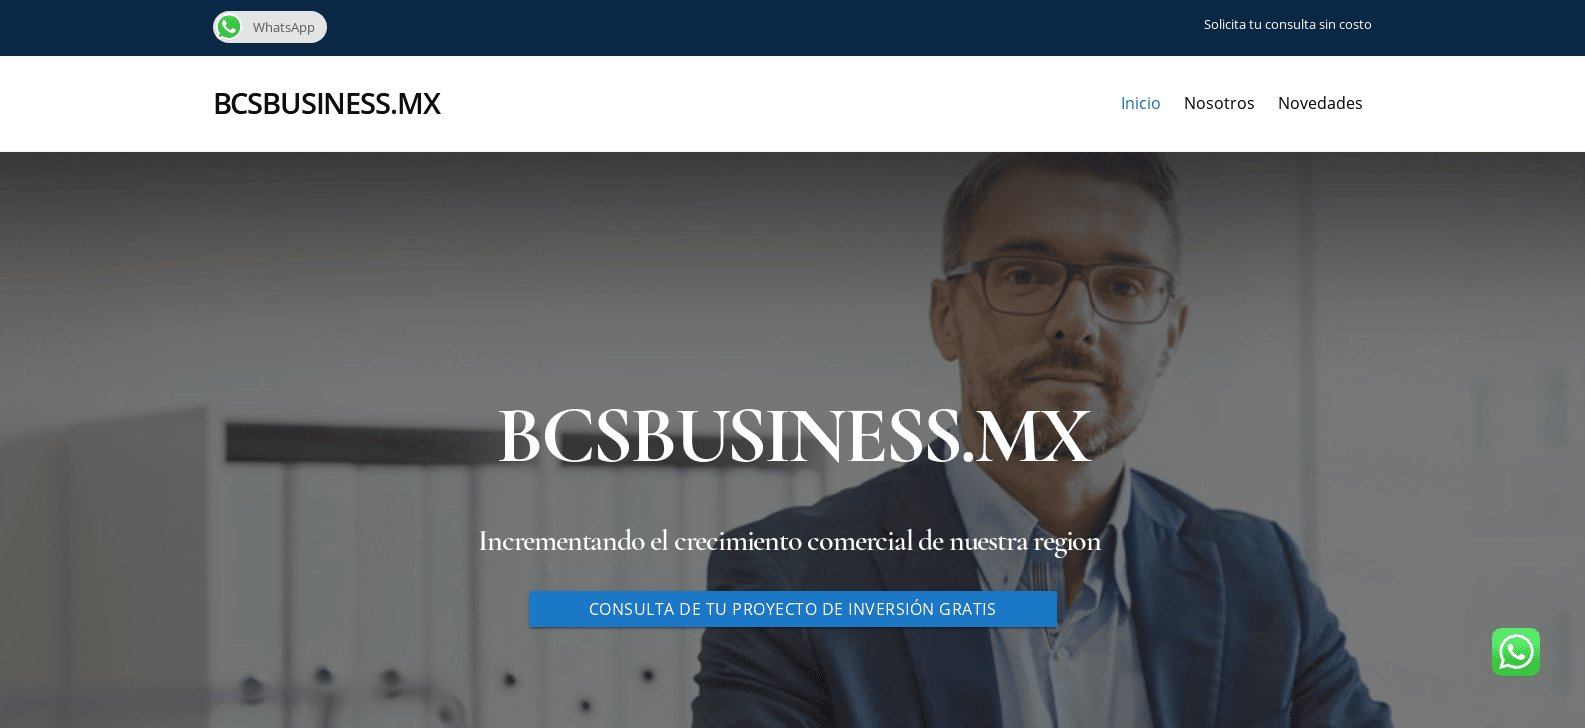 BCS BUSINESS